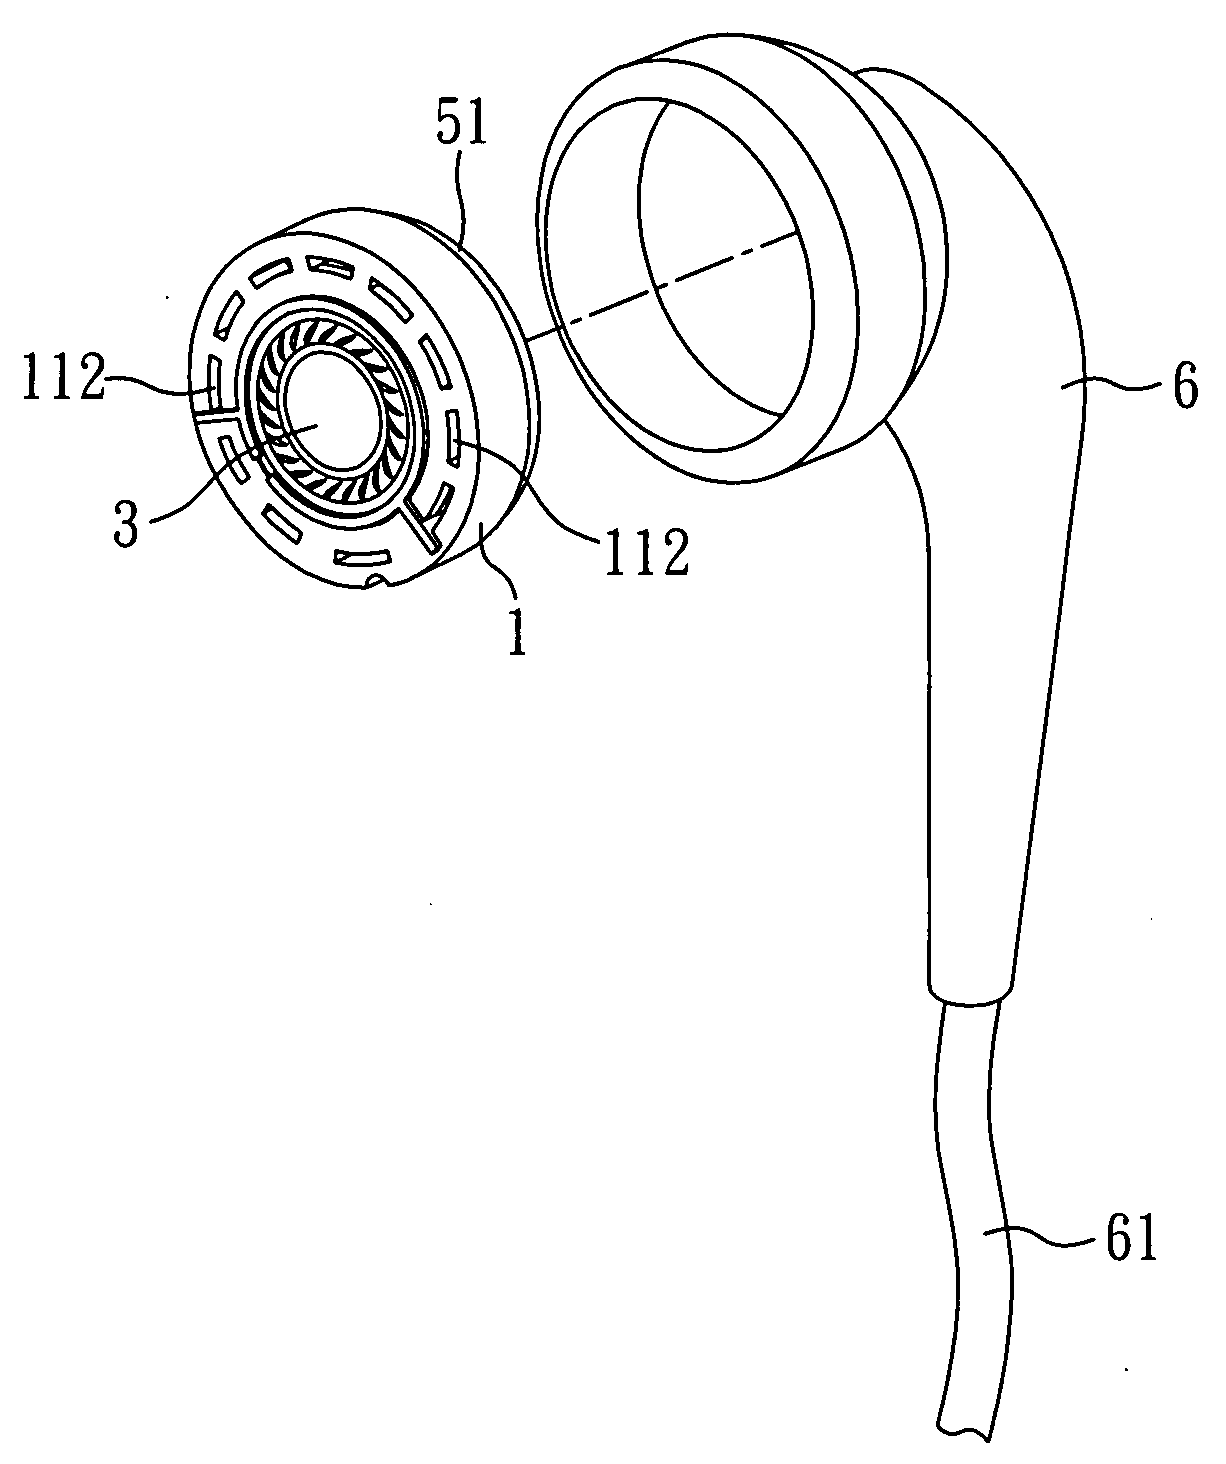 Dual-frequency coaxial earphones